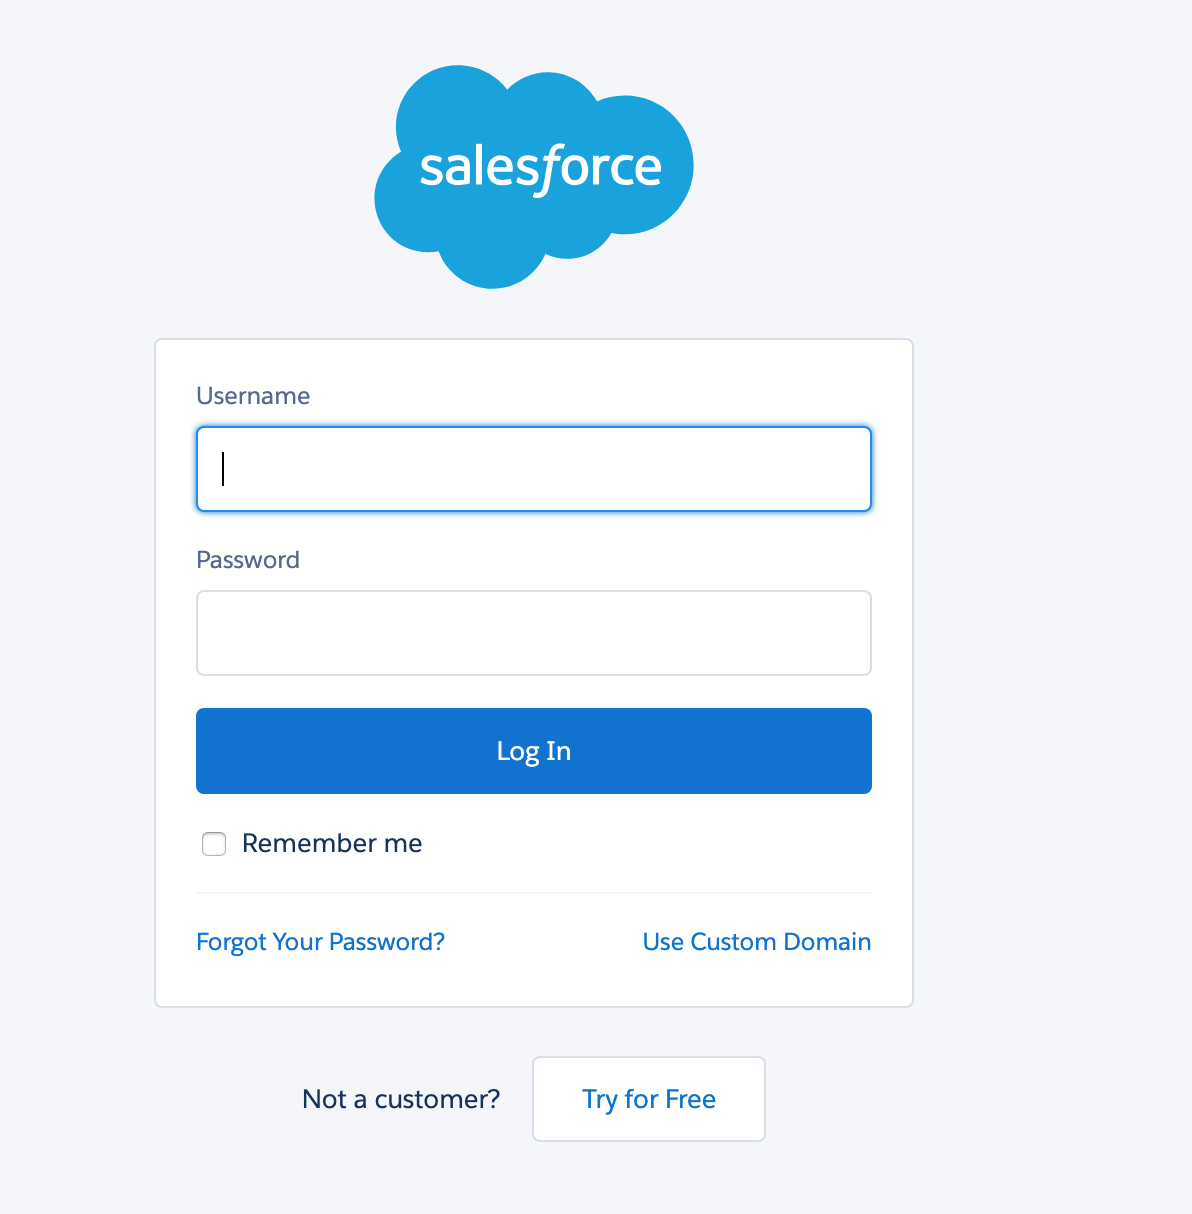 Salesforce login